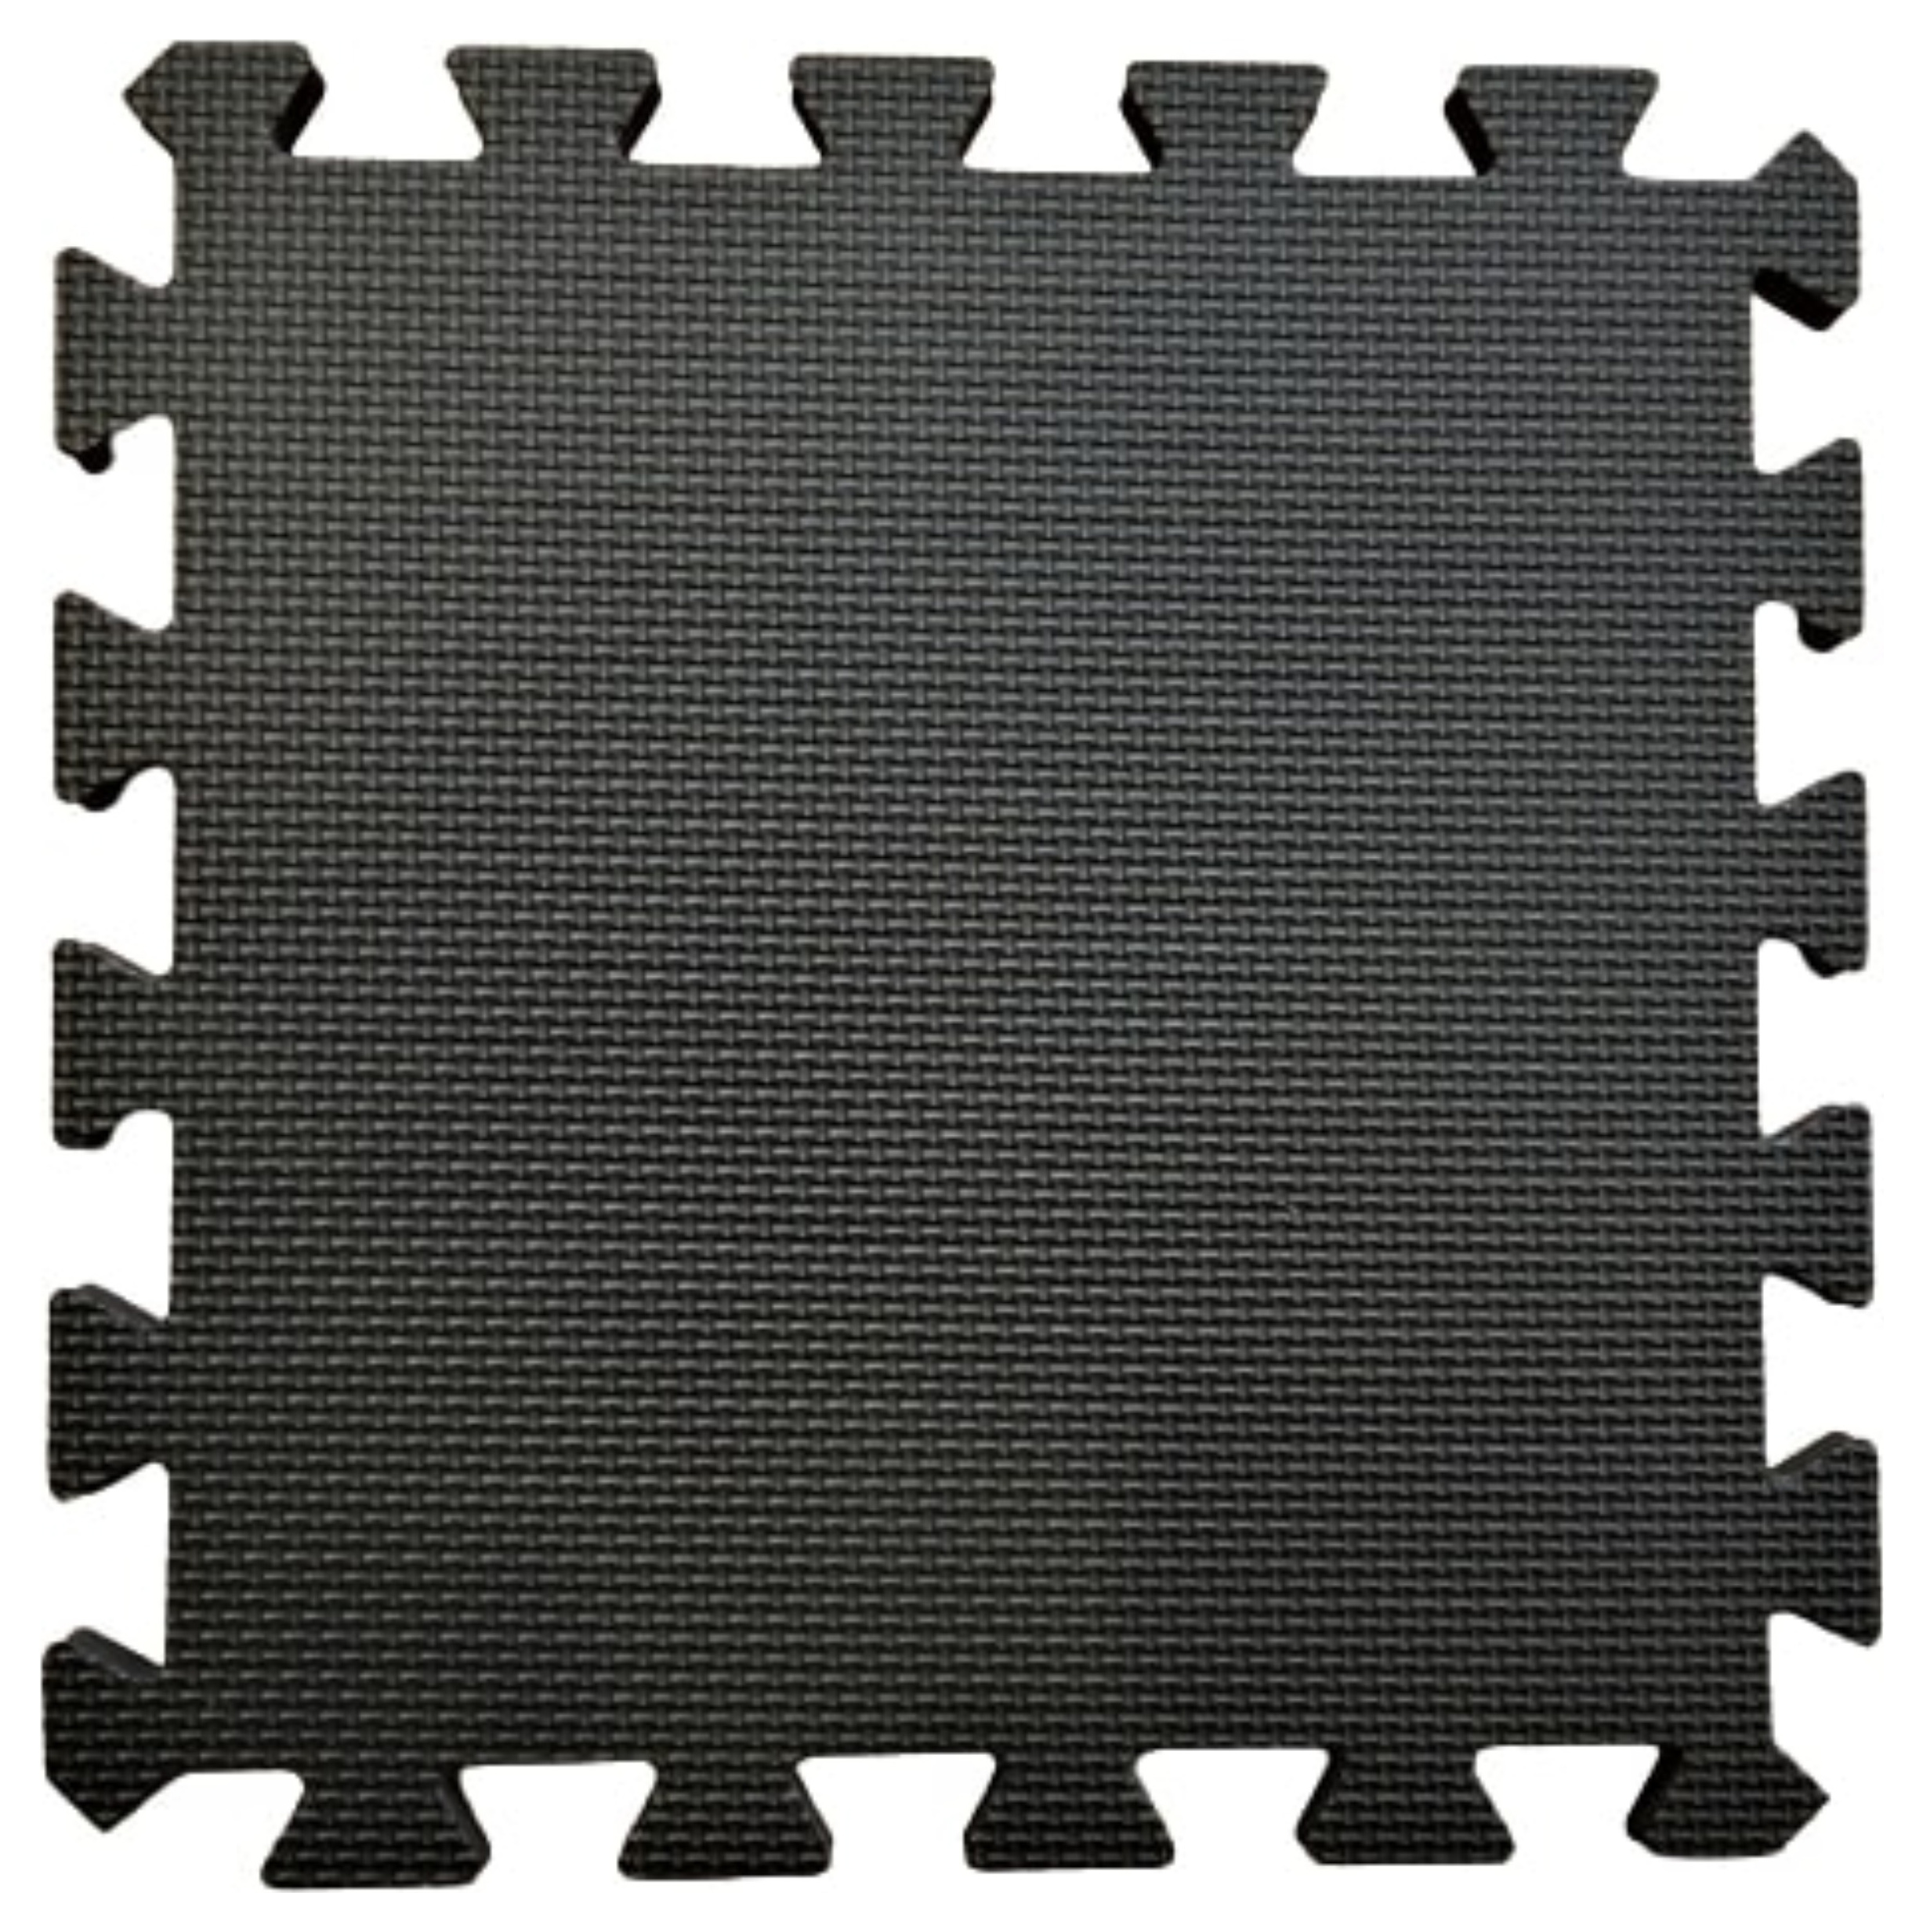 Warm Floor Black Interlocking Floor Tiles for Garden Buildings - 14 x 10ft